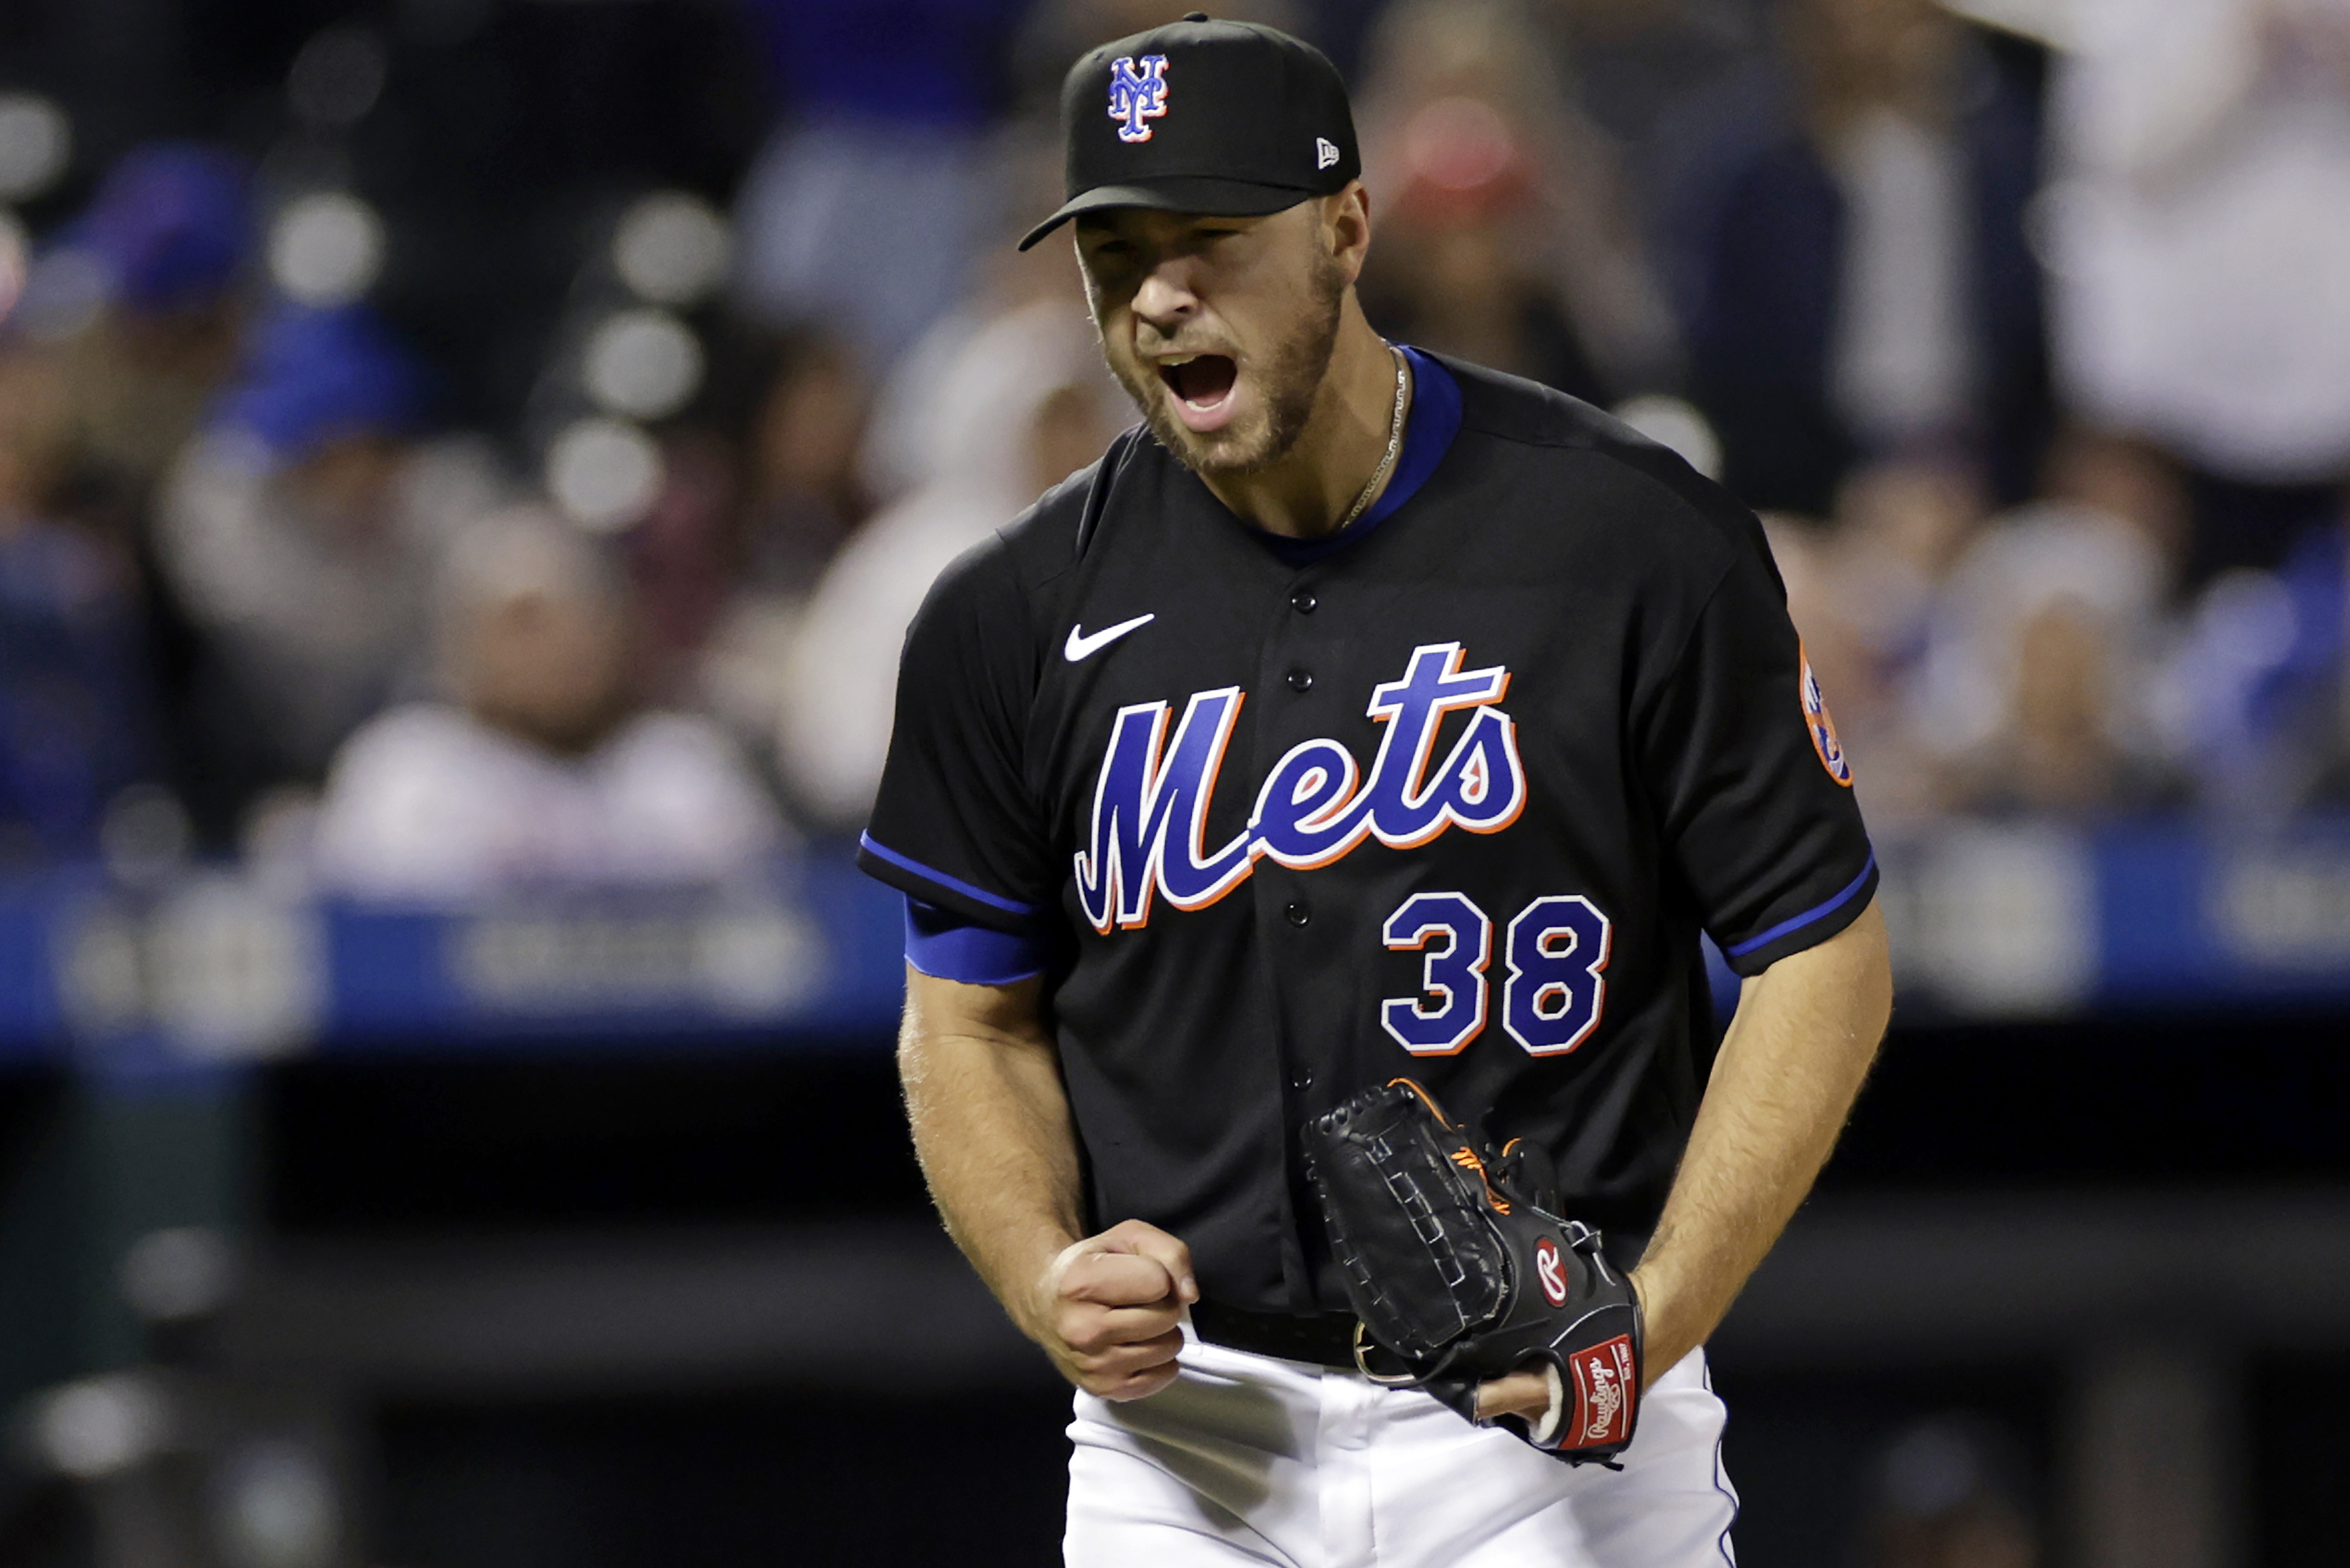 BREAKING NEWS: 5 Mets pitchers combine for no-hitter vs. Phillies (UPDATE)  